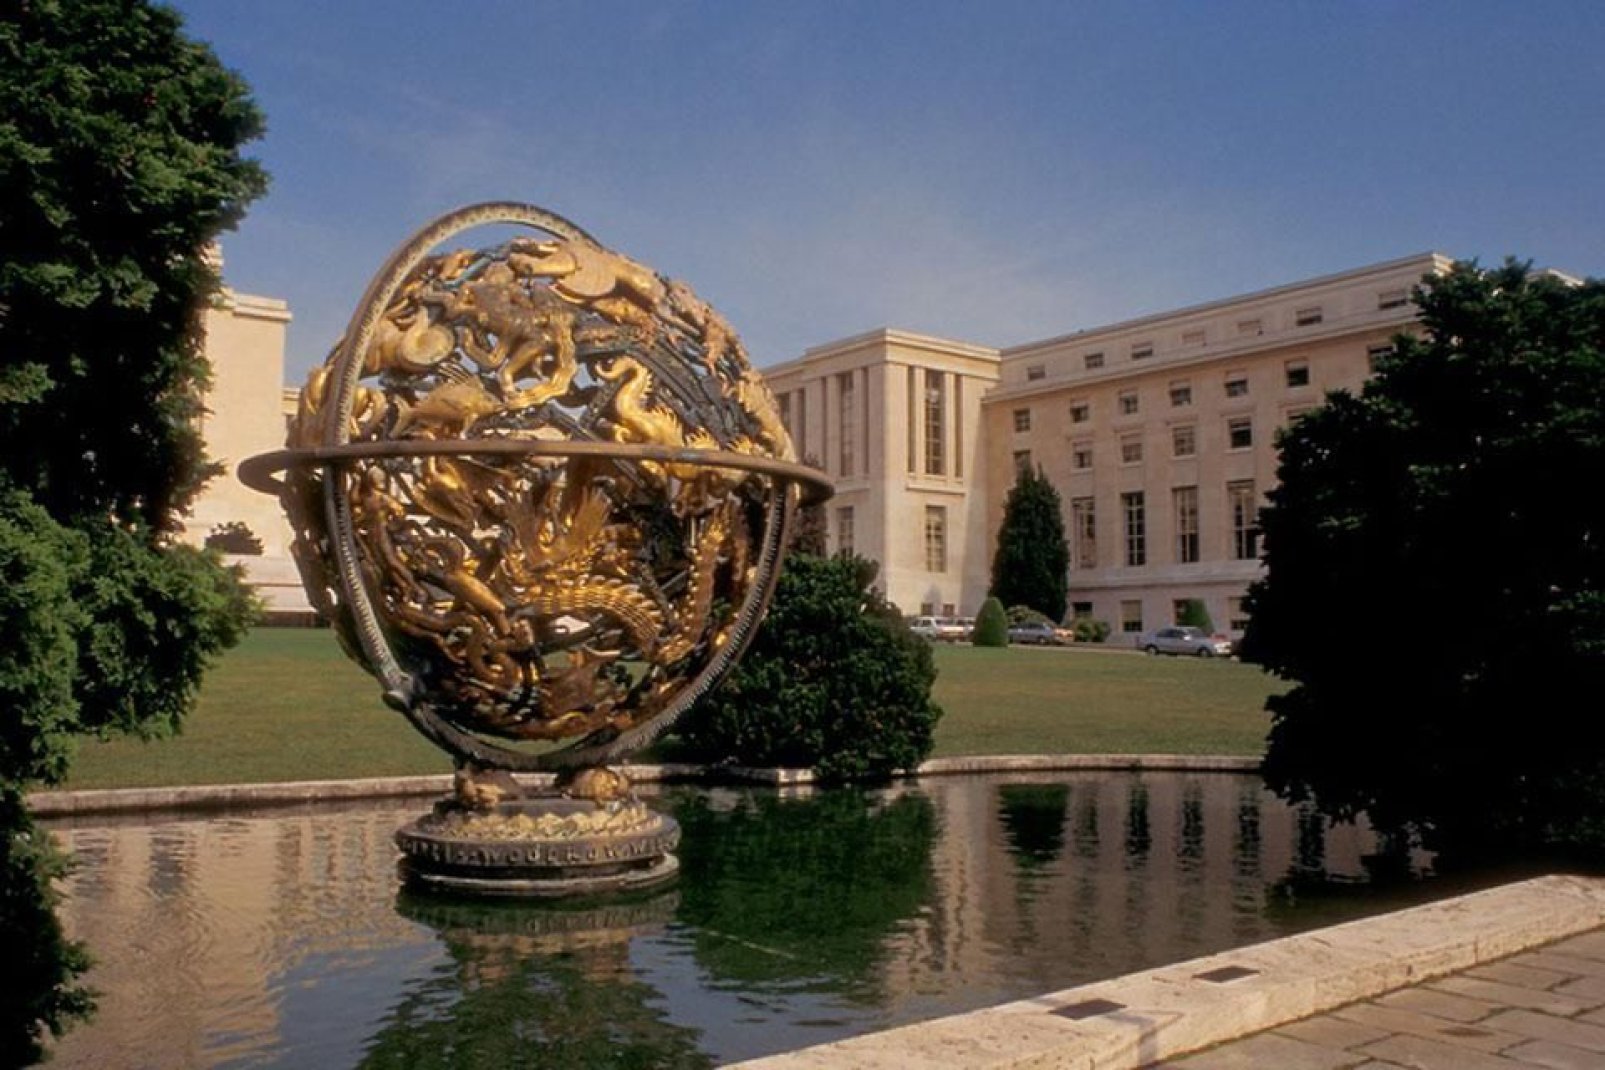 Esta esfera armilar de bronce dorado, creada por el escultor Paul Manship, se erige en el parque de la ONU.